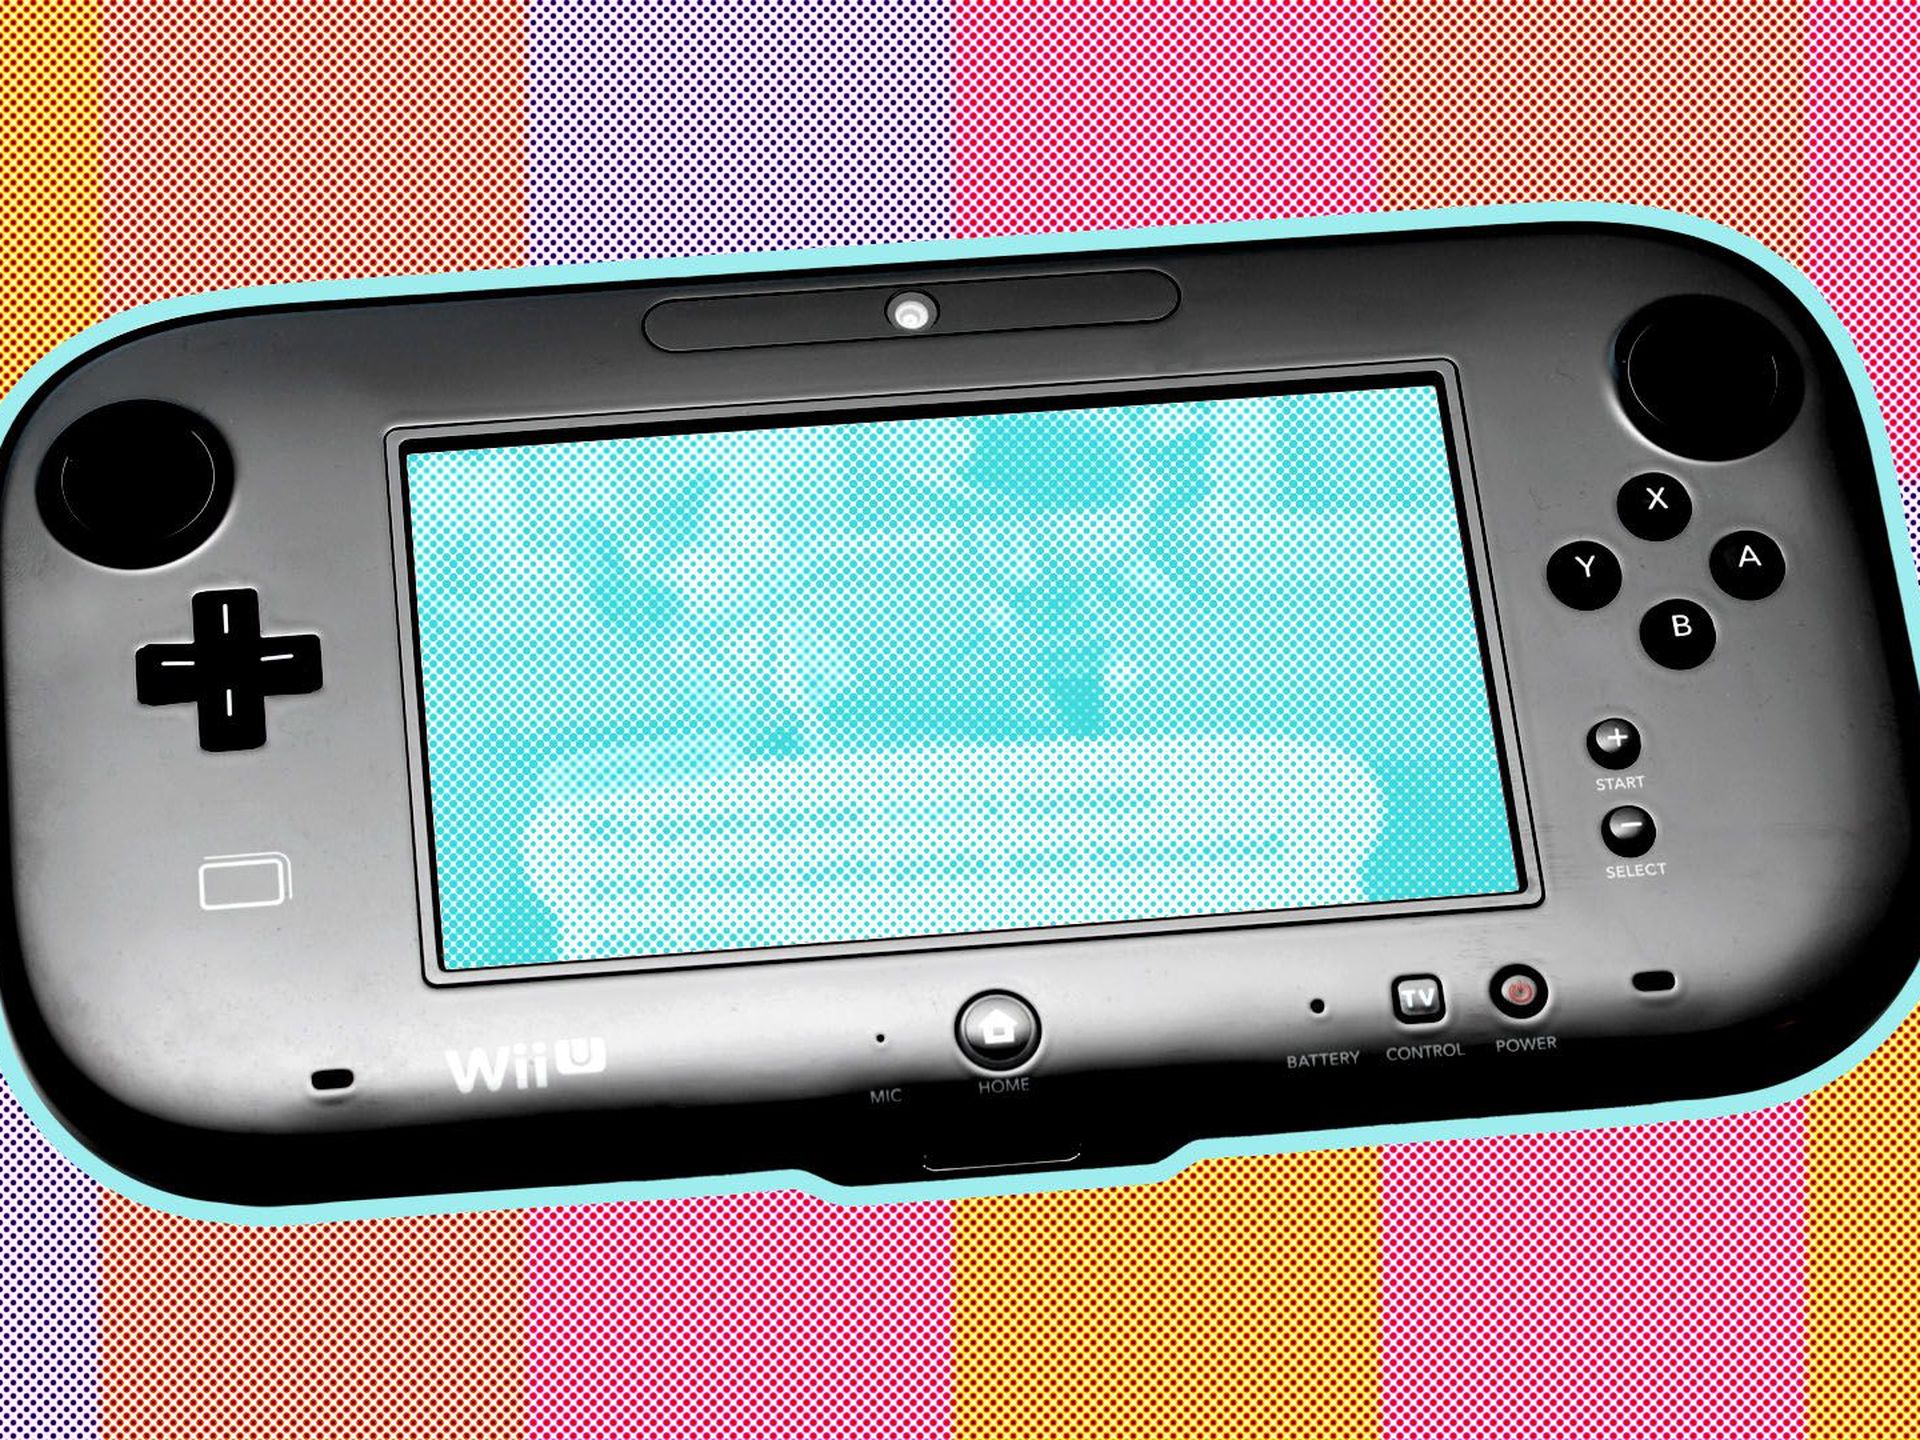 Nintendo Wii U Successor Needs a Great Controller